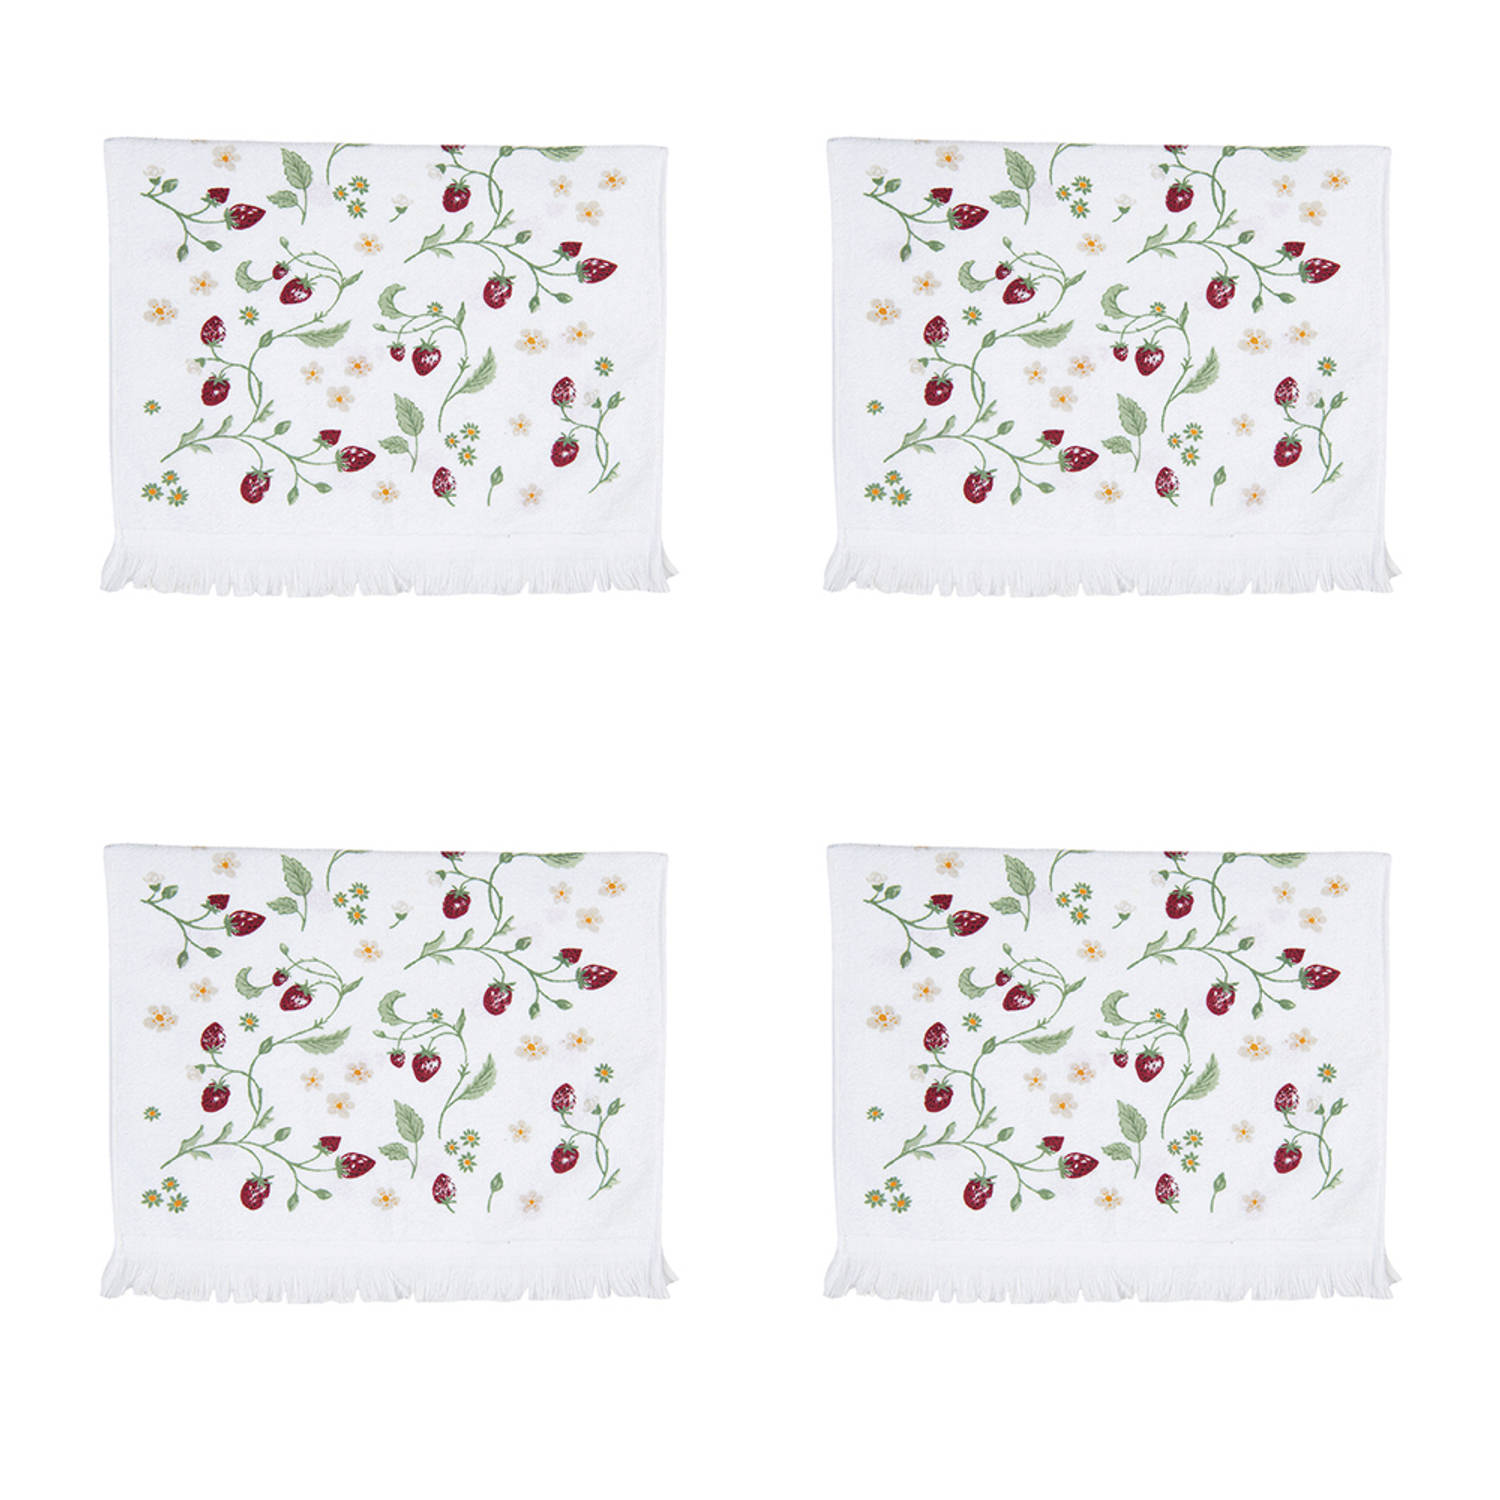 HAES DECO - Set van 4 Gastendoeken - formaat 40x66 cm - kleuren Rood / Groen / Wit - van 100% Katoen - Collectie: Wild Strawberries - Gastendoek / handdoek / Toilethanddoek